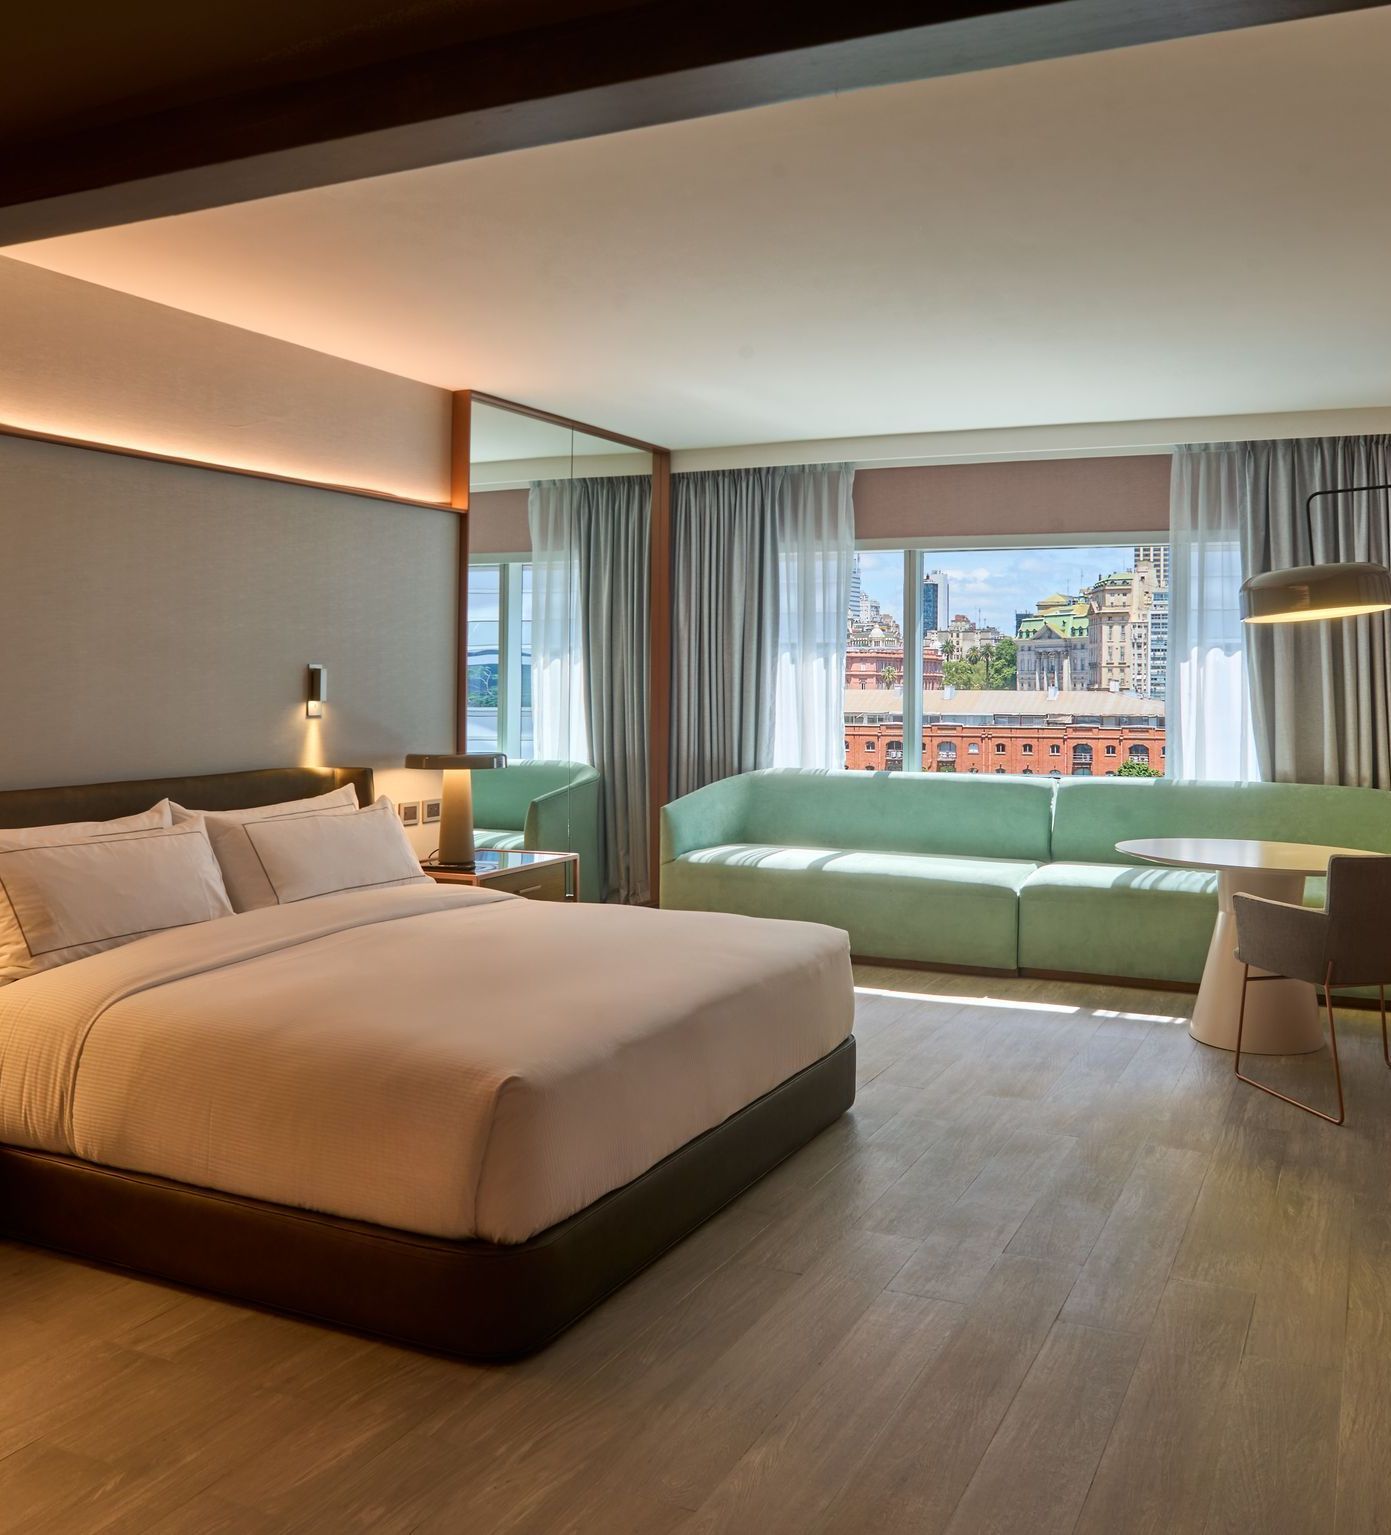 Una habitación de hotel con una cama grande y un sofá verde.